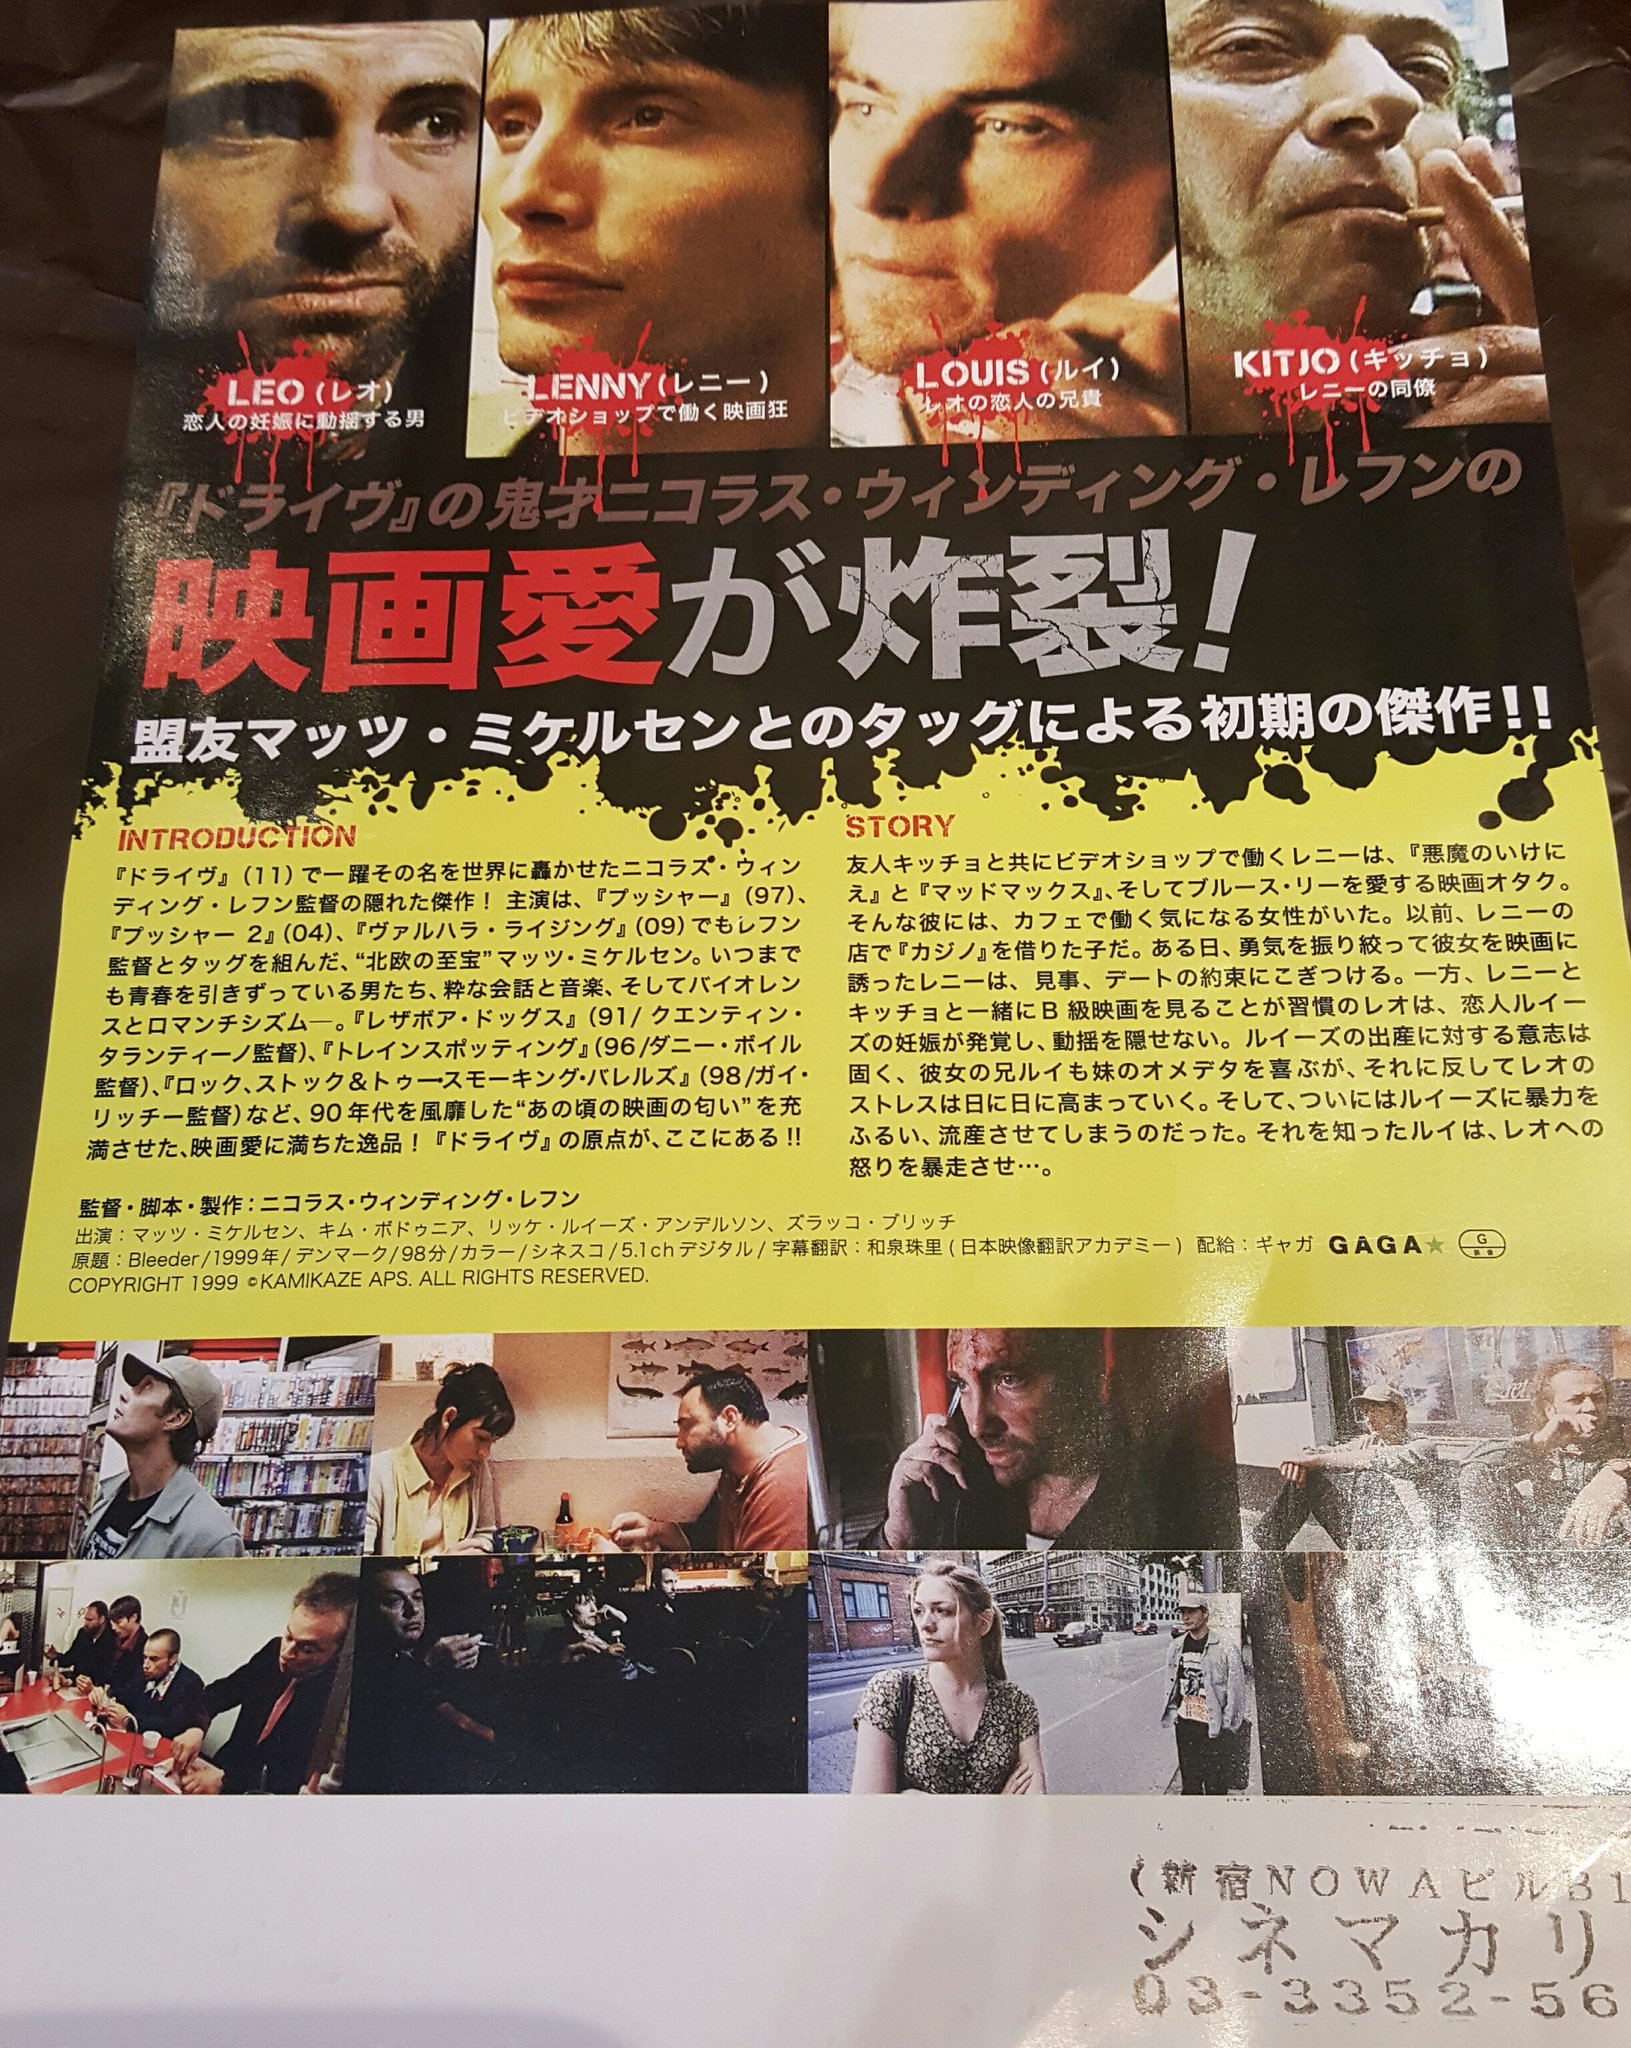 𝑵𝒊𝒄𝒐𝒍𝒂𝒔 𝑾𝒊𝒏𝒅𝒊𝒏𝒈 𝑹𝒆𝒇𝒏 𝑭𝒂𝒏𝒔 Bleeder Movie Flyer Japan Ver Nicolaswindingrefn Madsmikkelsen T Co Txwhrtheyf Twitter